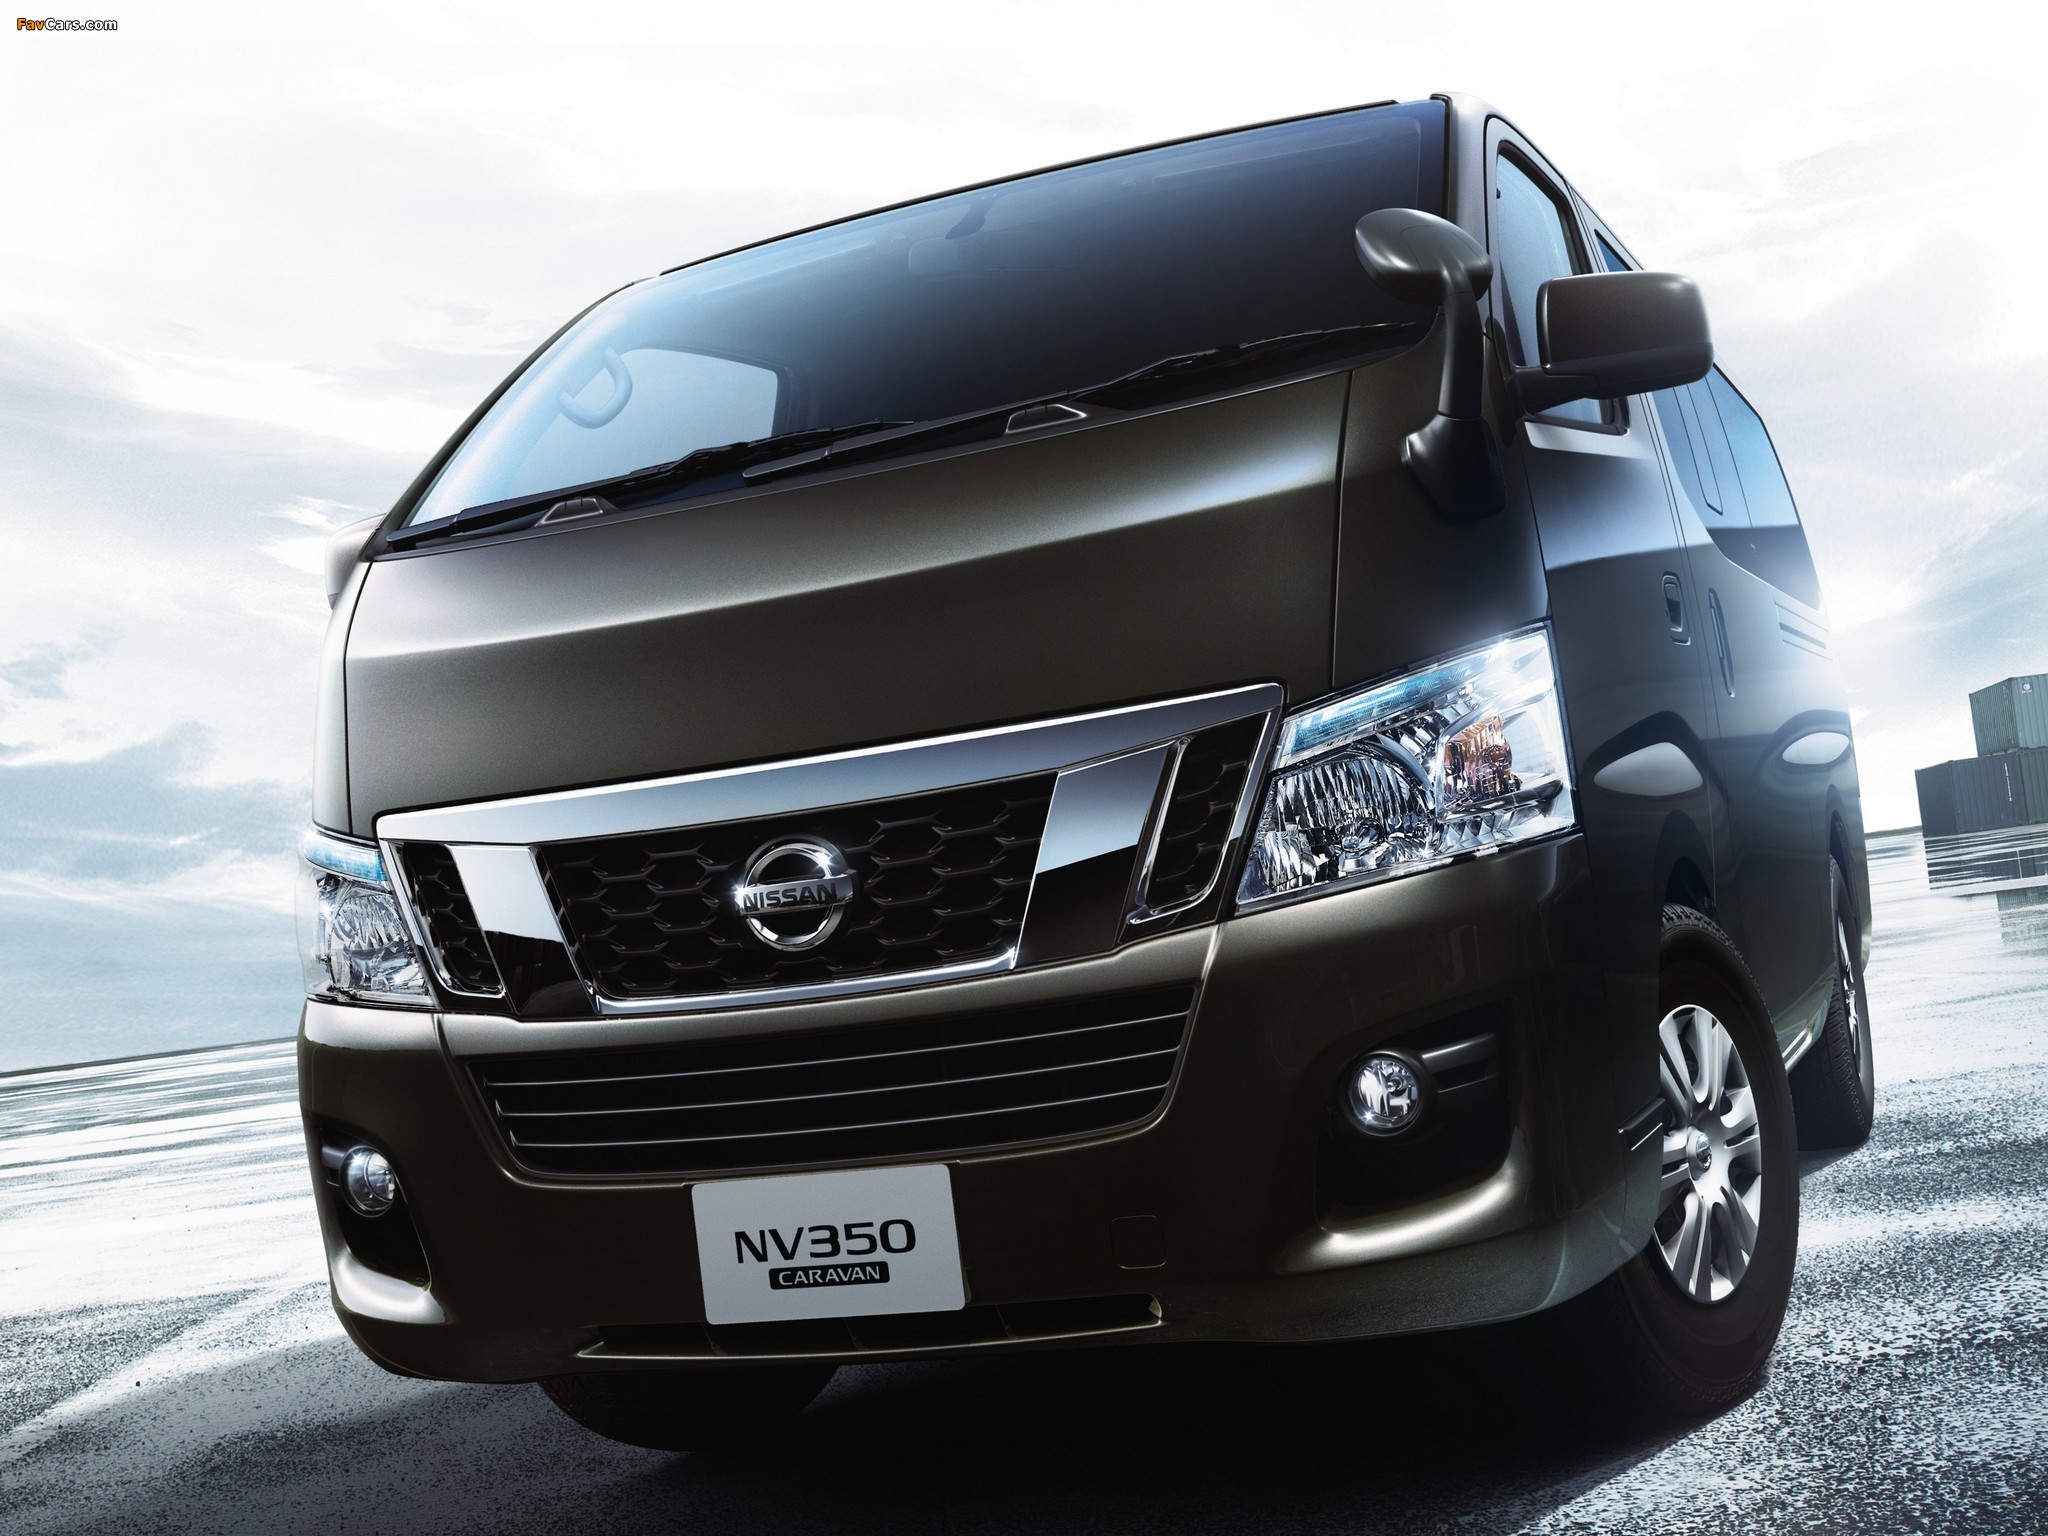 Nissan NV350 Caravan Premium GX (E26) 2012 pictures (2048 x 1536)